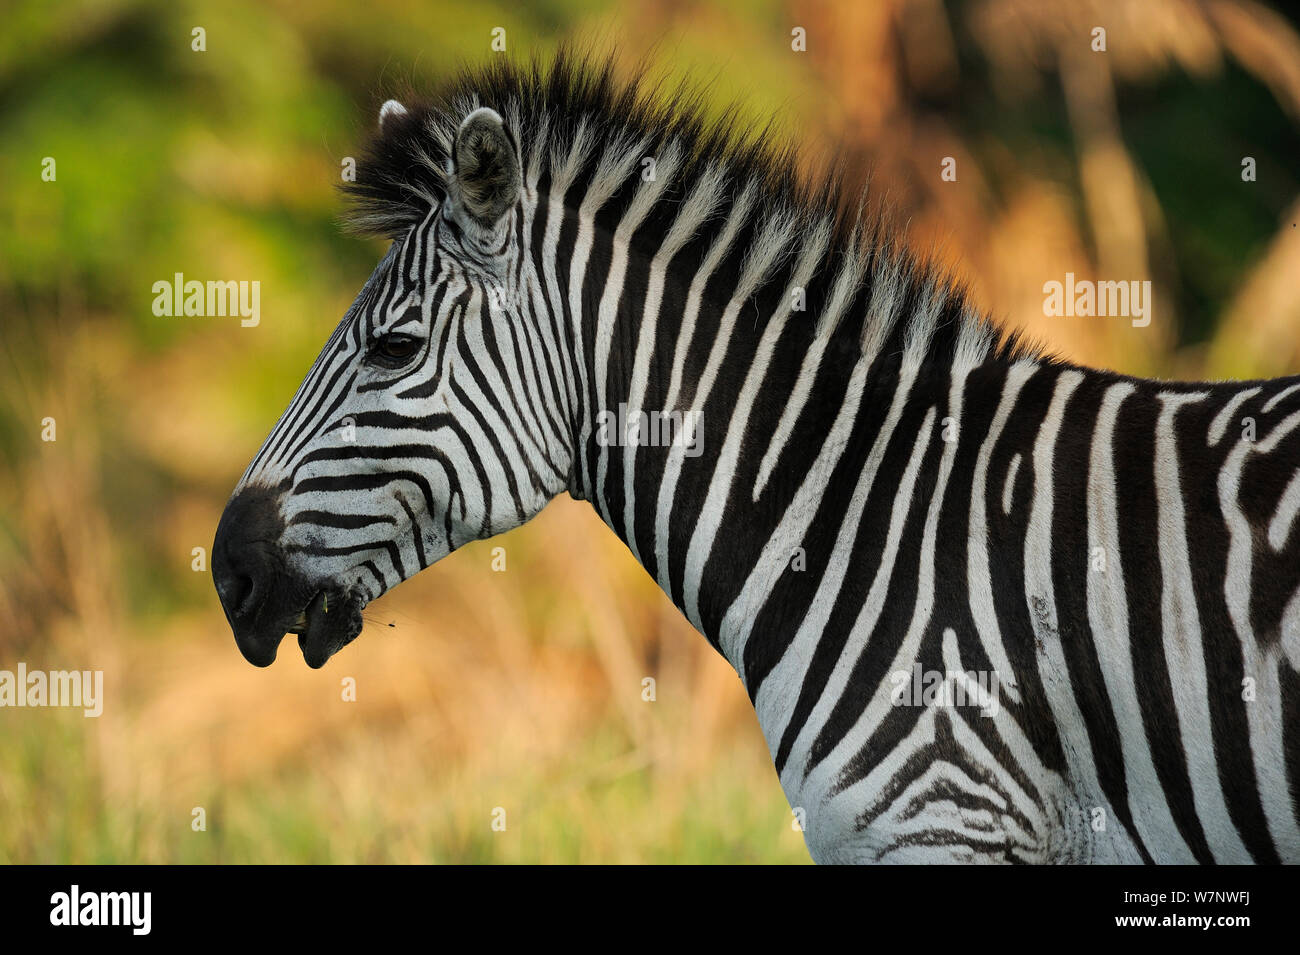 Common zebra (Equus quagga) profile portrait, Durban, South Africa Stock Photo